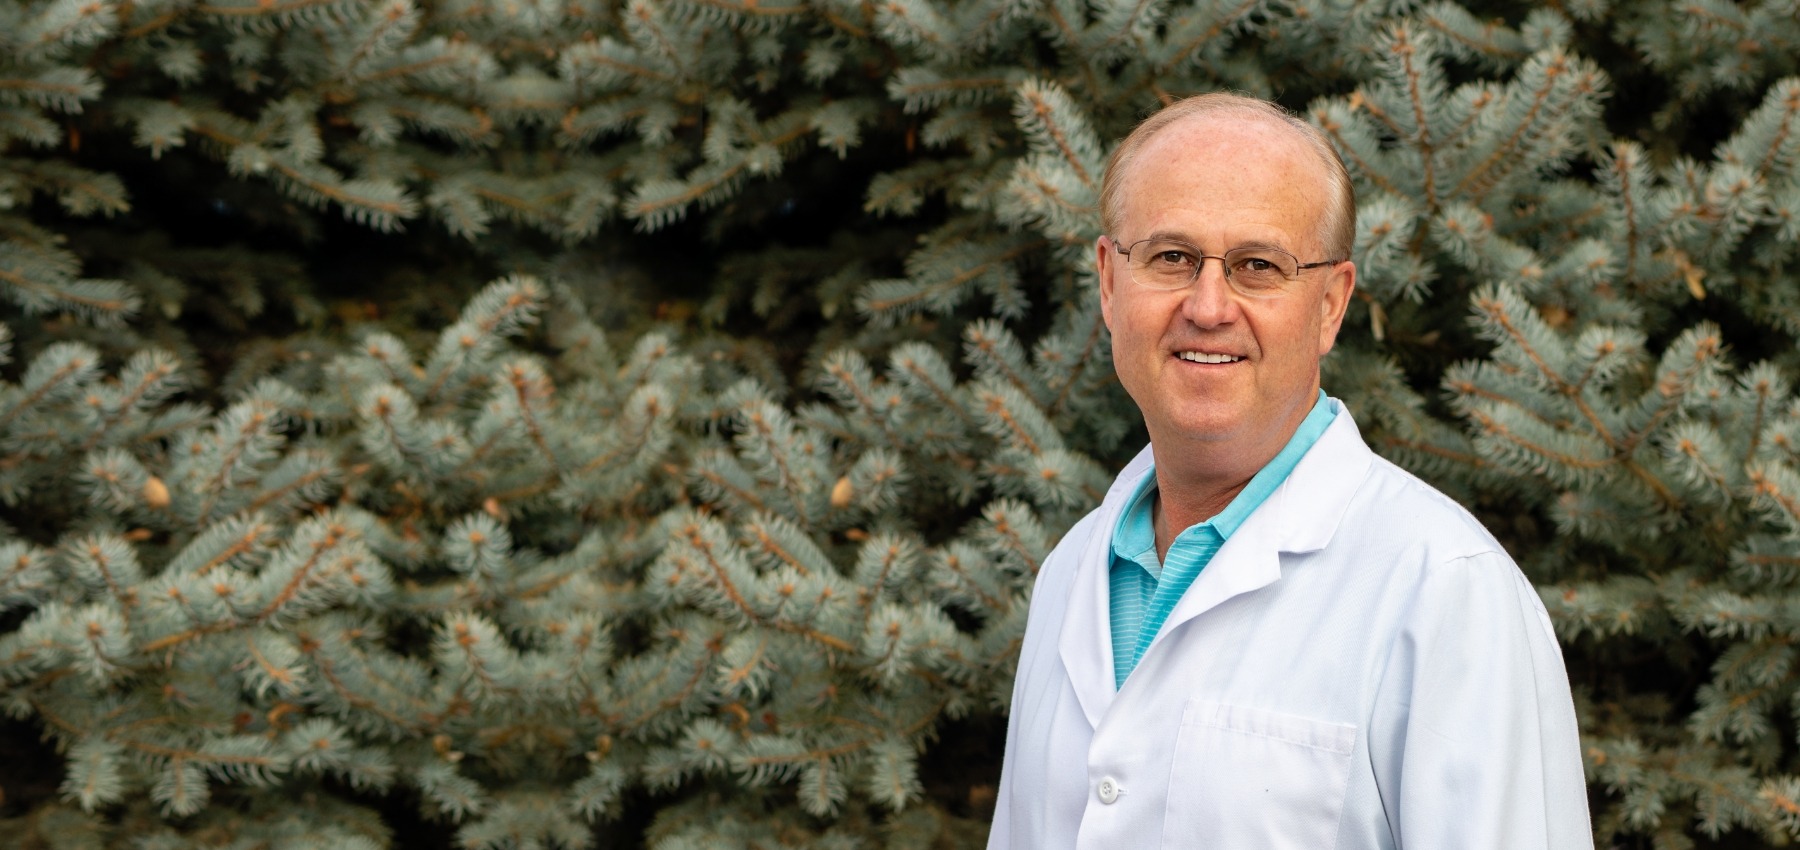 Longmont Colorado dentist Brian Coats D D S